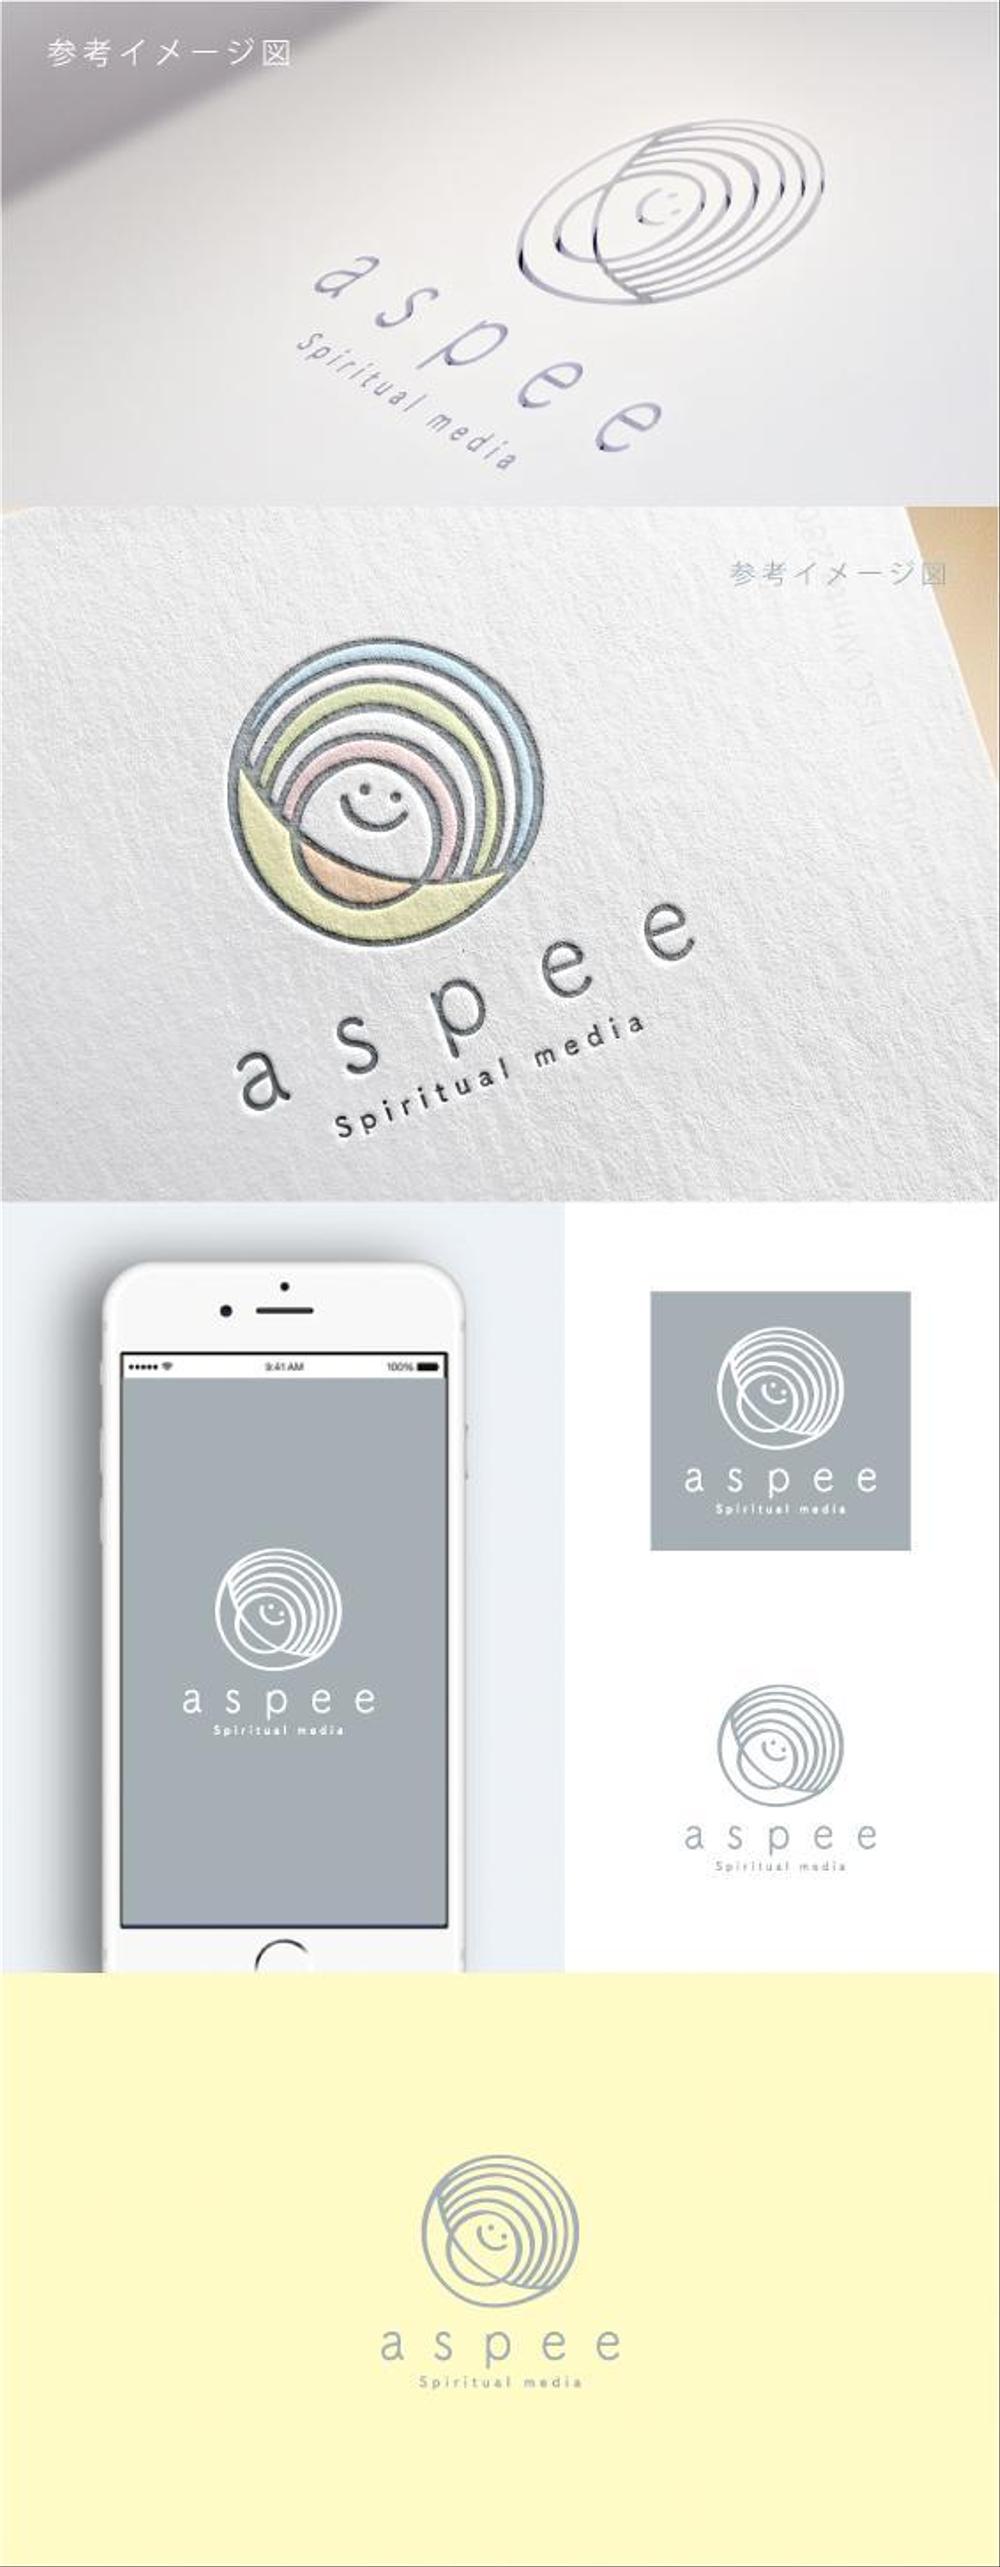 女性向けWEBメディア「aspee」のロゴ制作